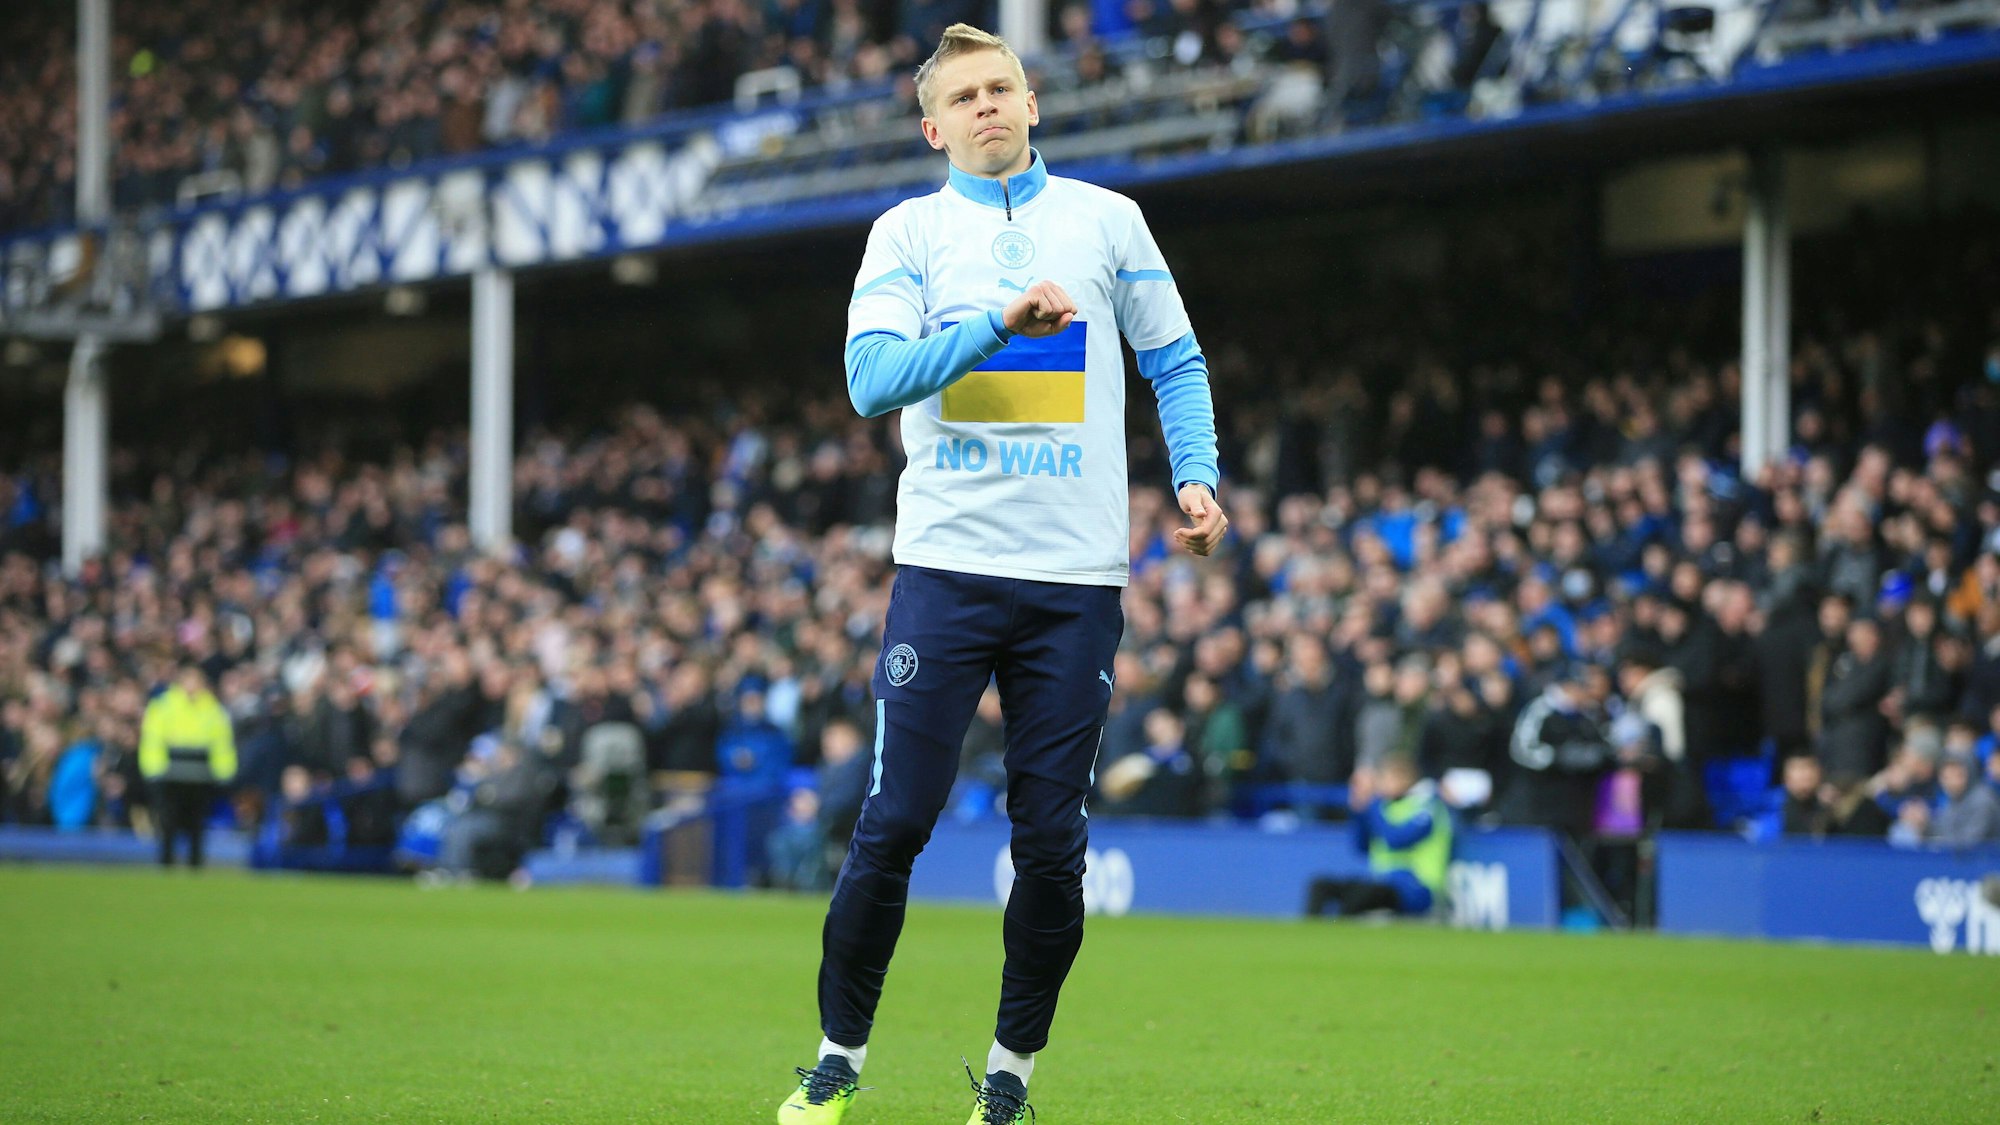 Oleksandr Zinchenko mit Aufwärmshirt zur Solidarität mit der Ukraineam 26. Februar beim Spiel zwischen Manchester City und dem FC Everton.